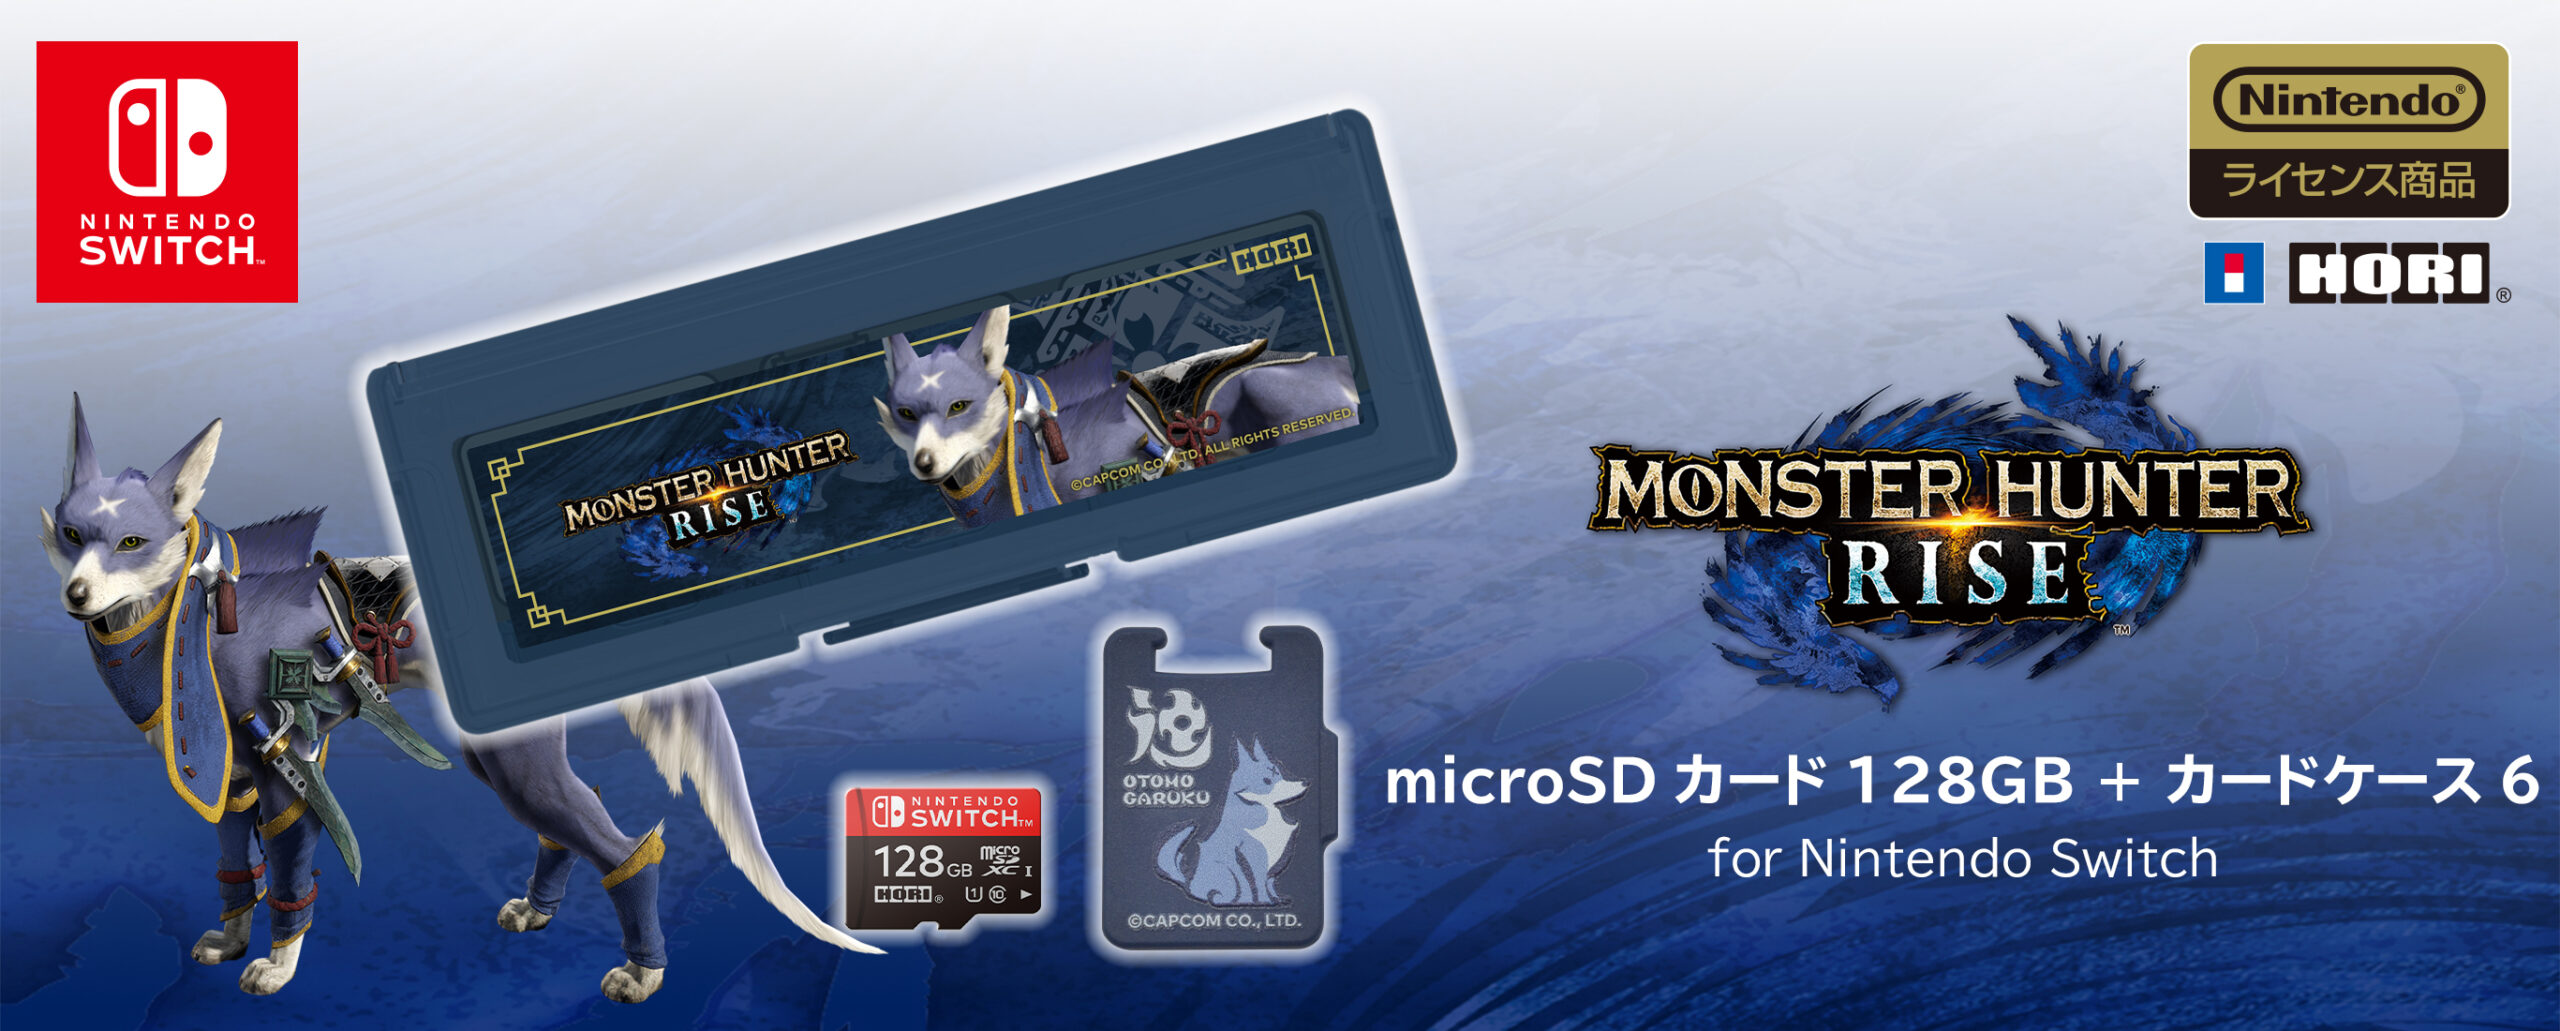 株式会社 HORI | モンスターハンターライズ microSDカード128GB + ...